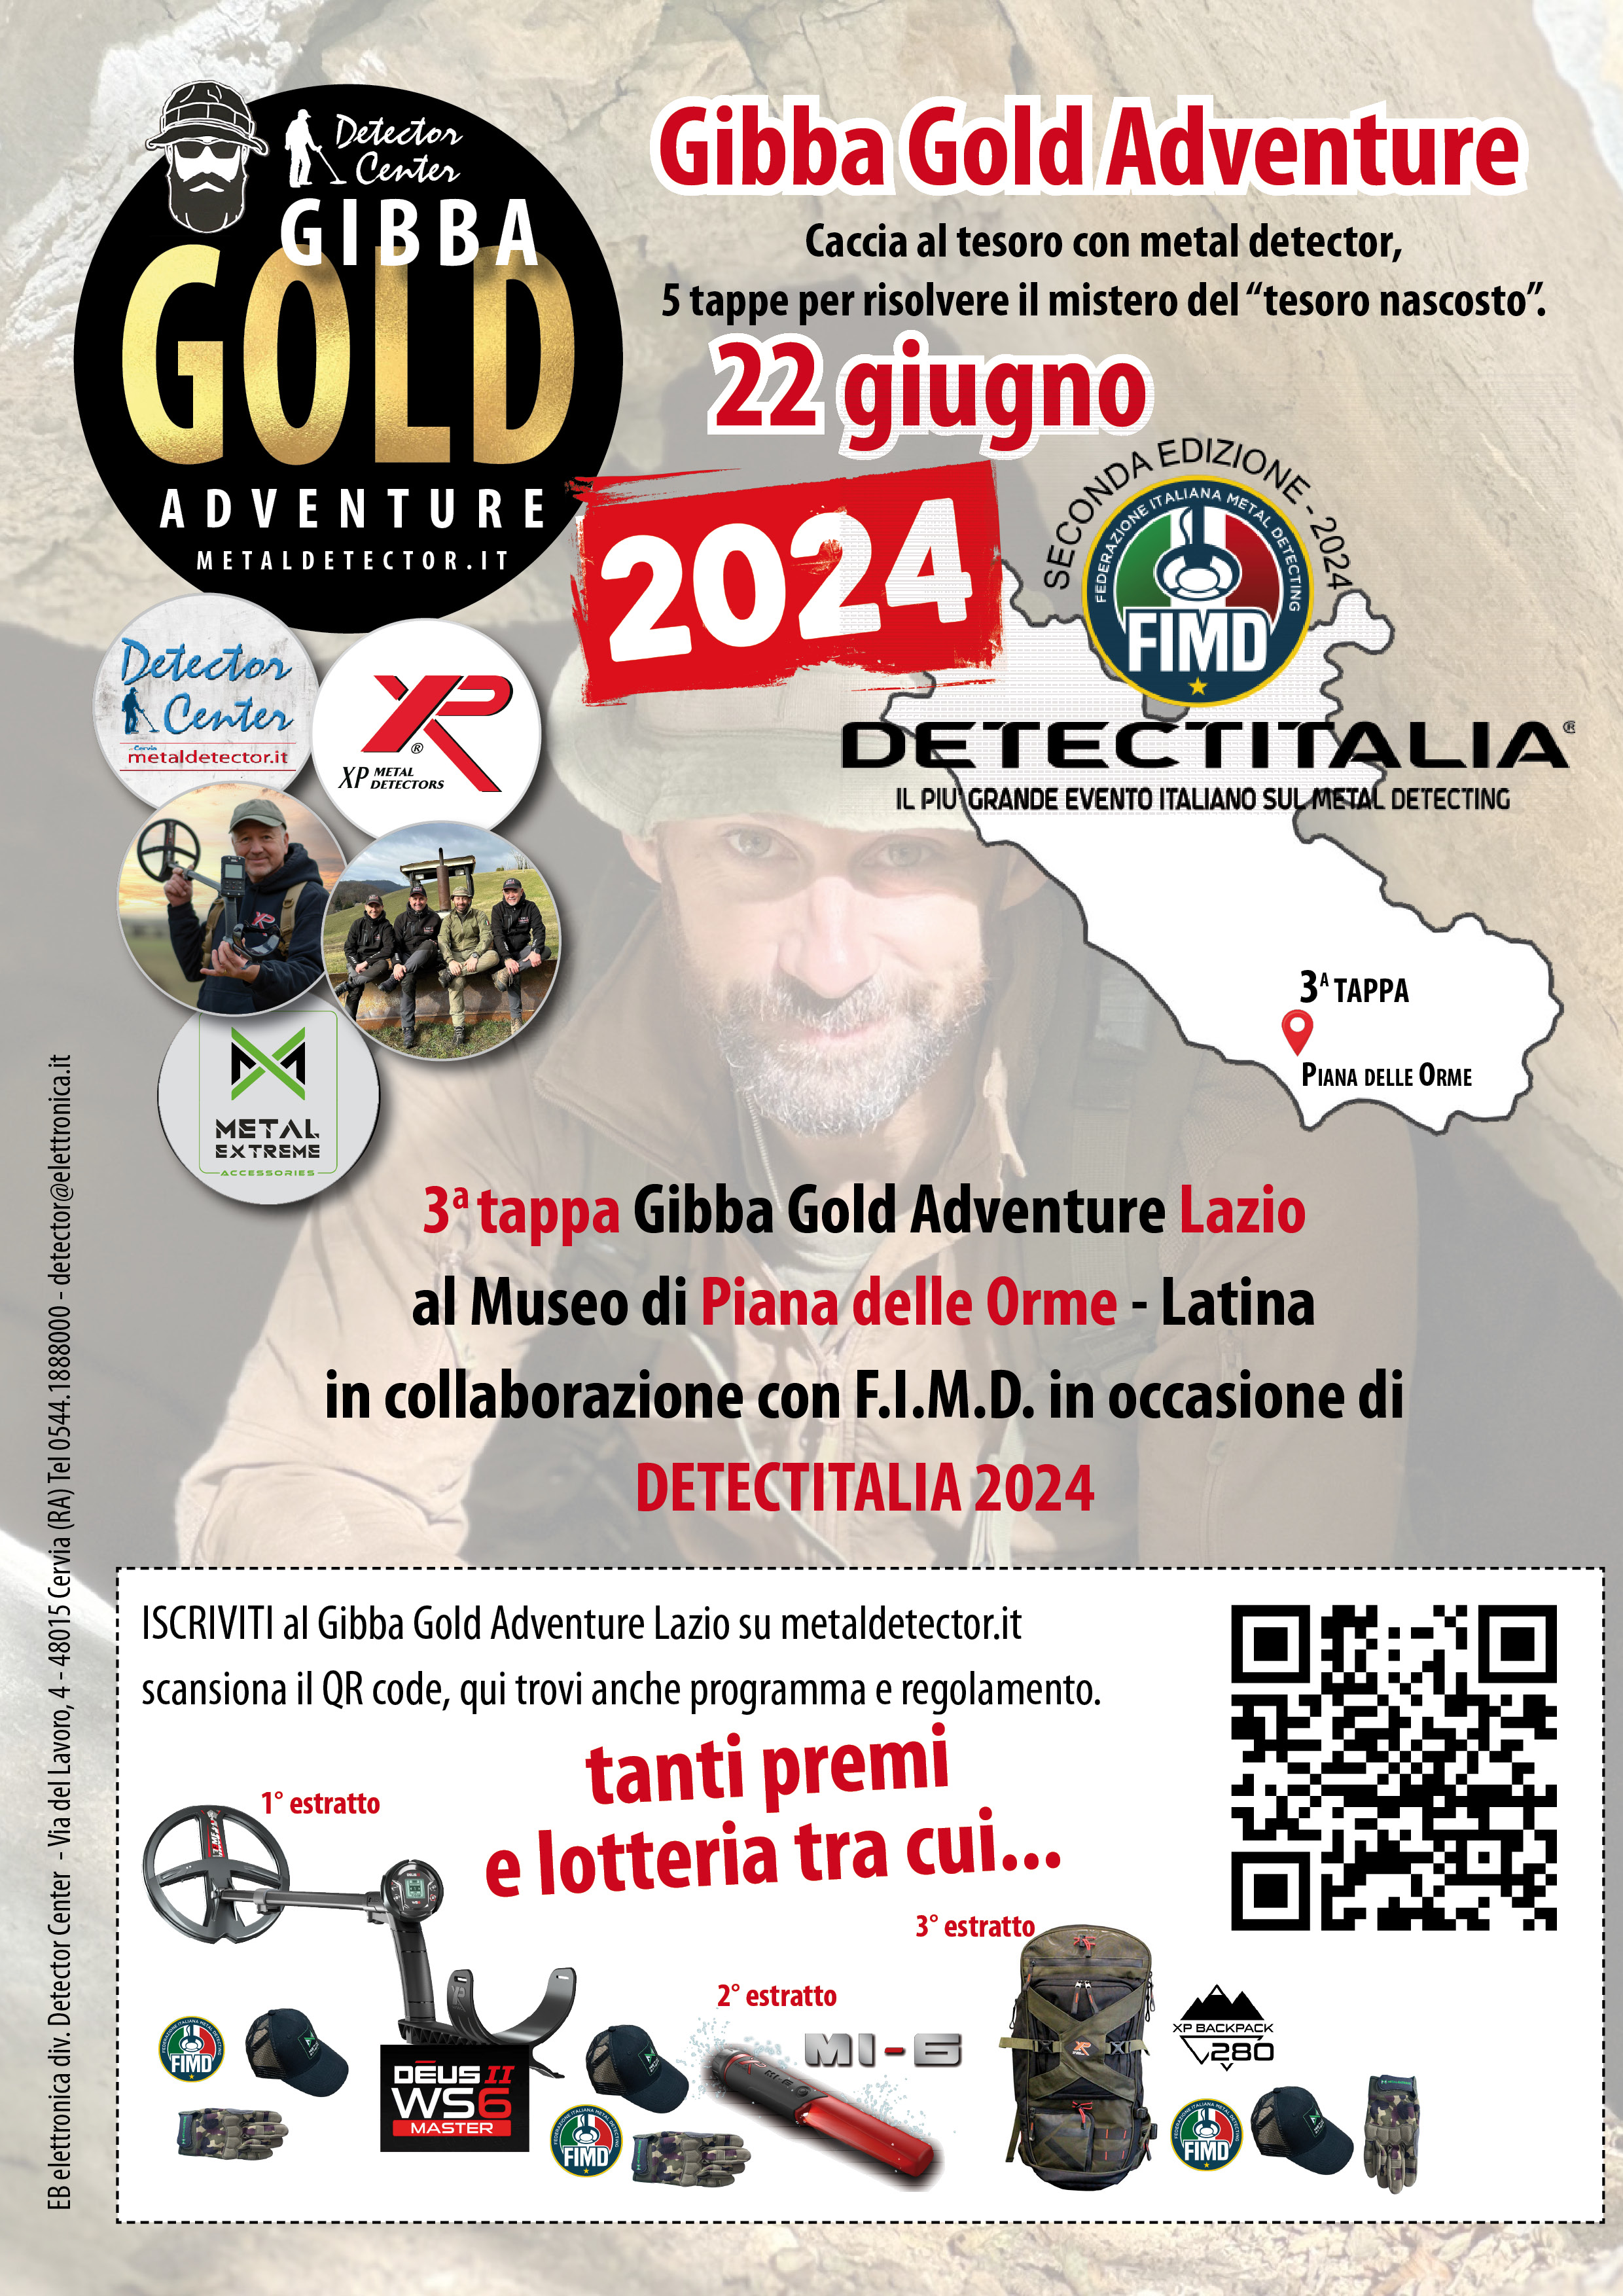 Gibba Gold Adventure Lazio